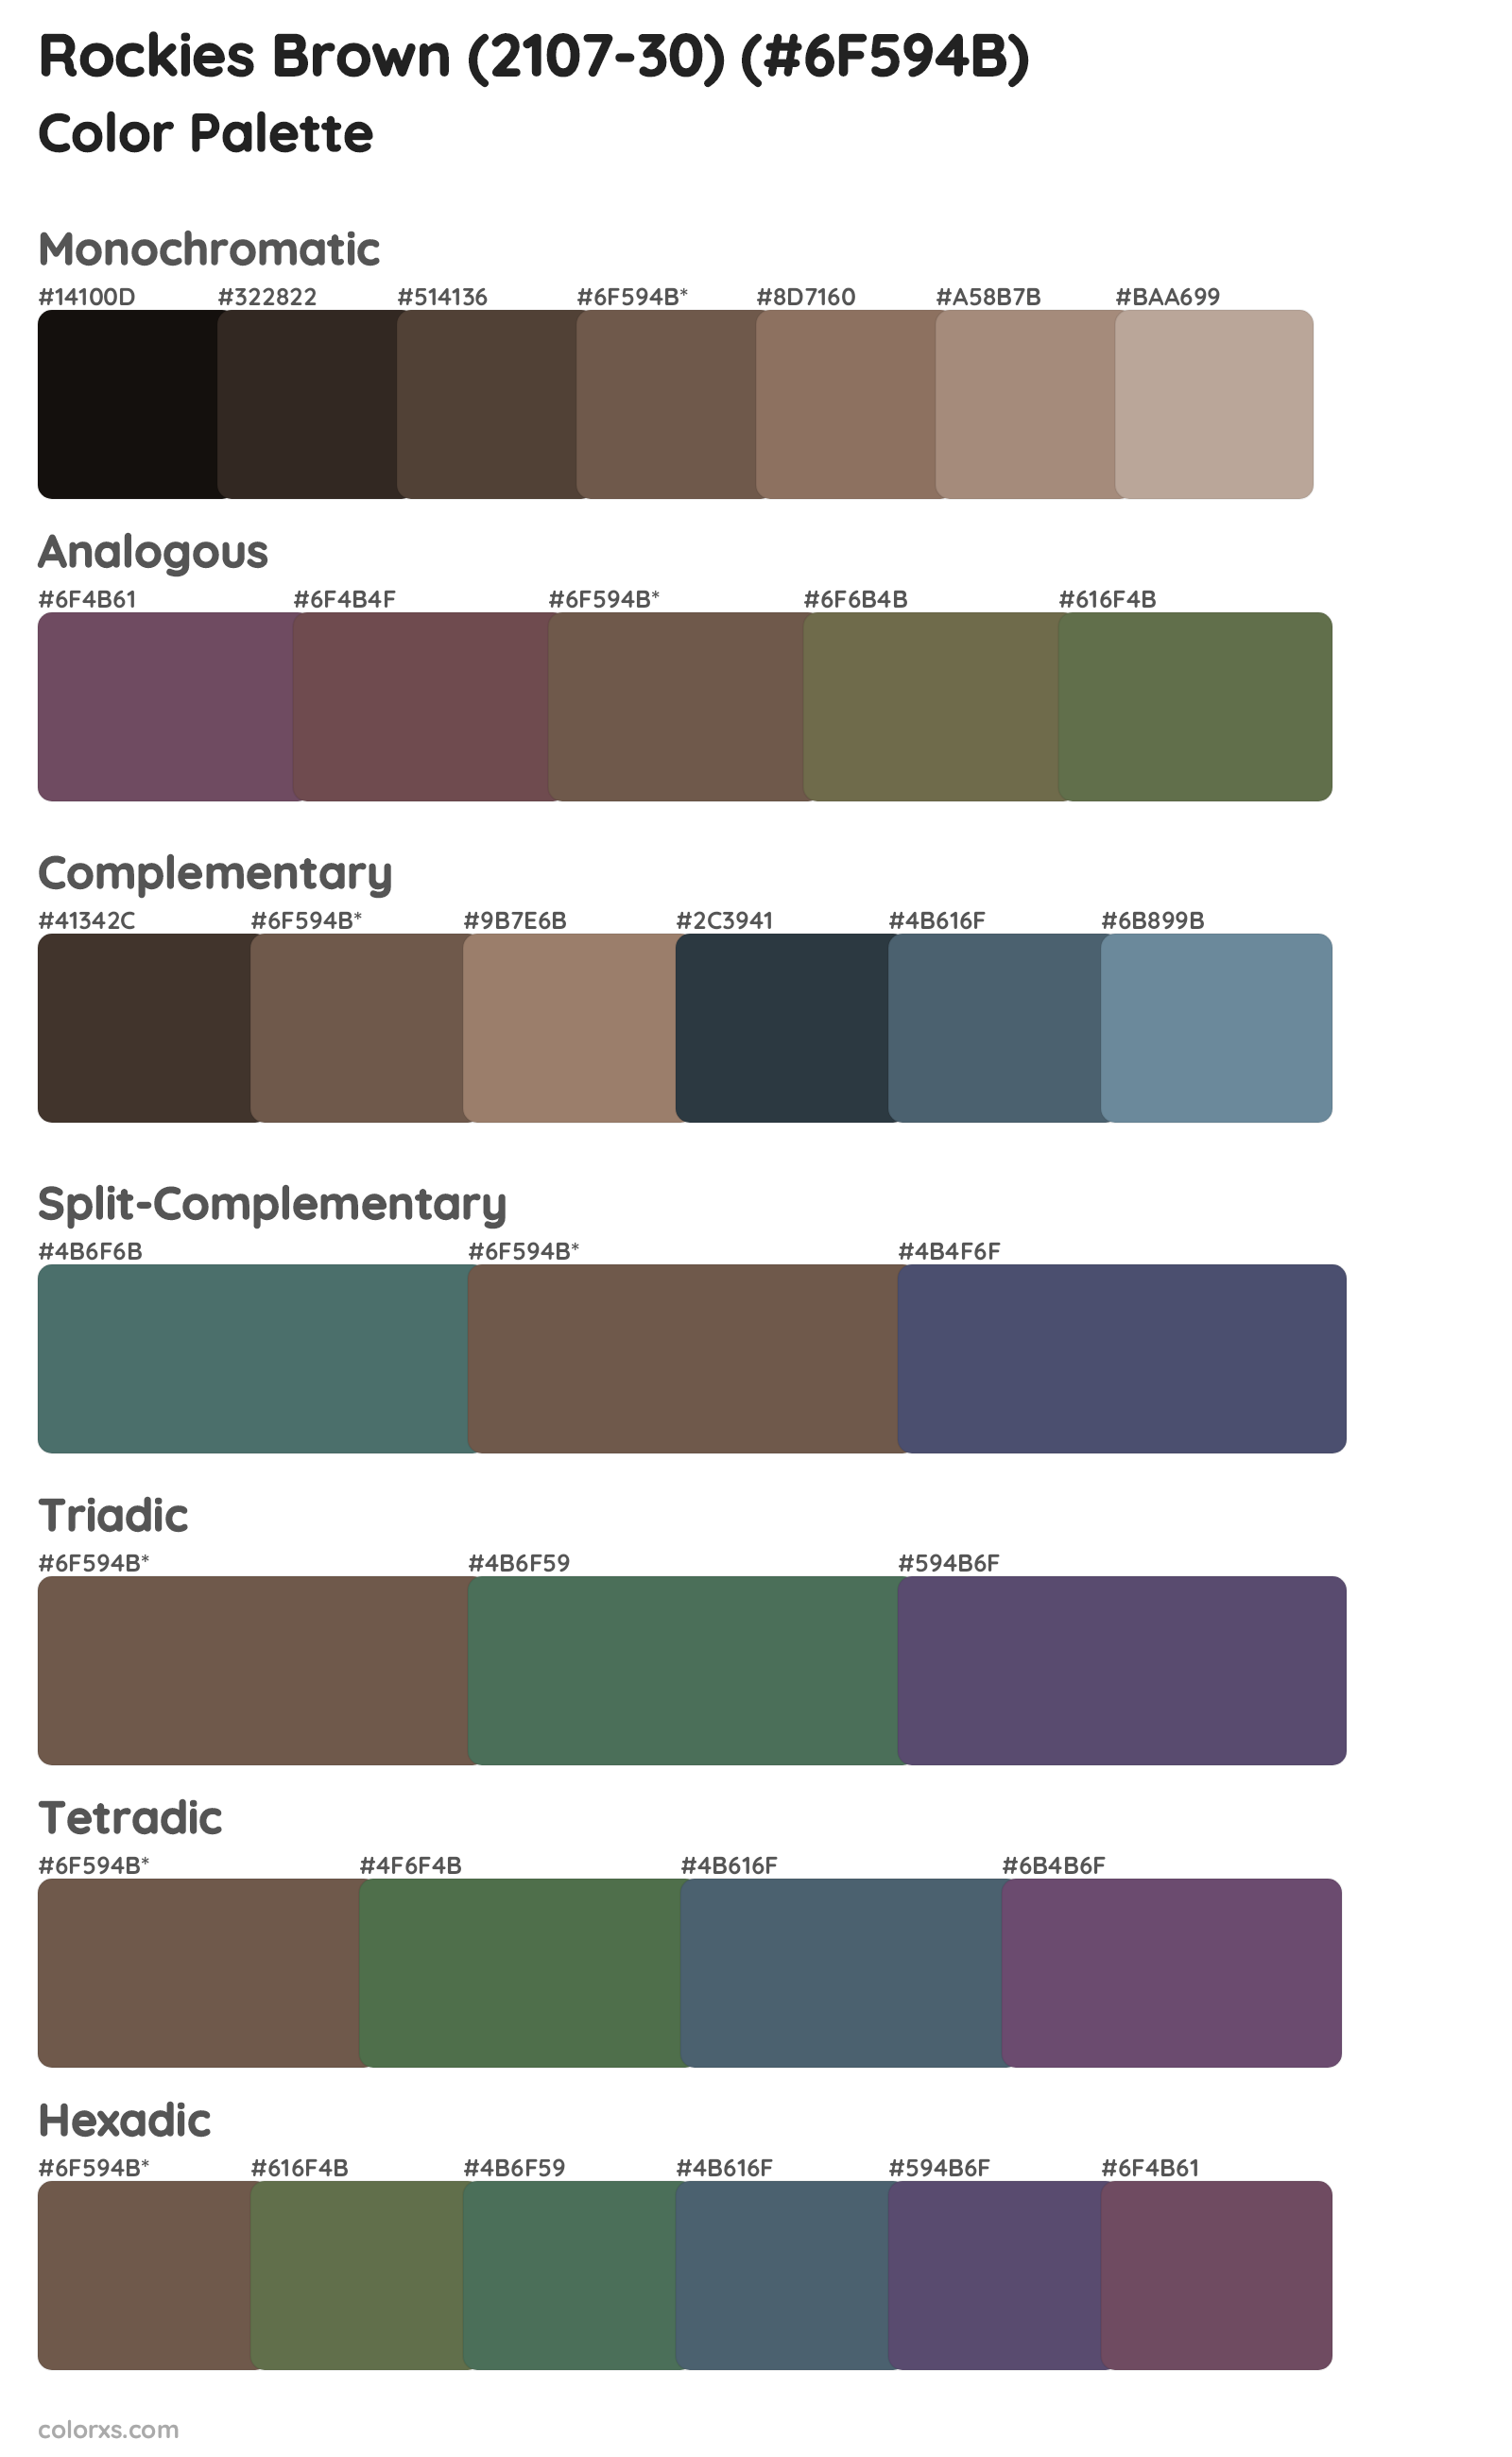 Rockies Brown (2107-30) Color Scheme Palettes